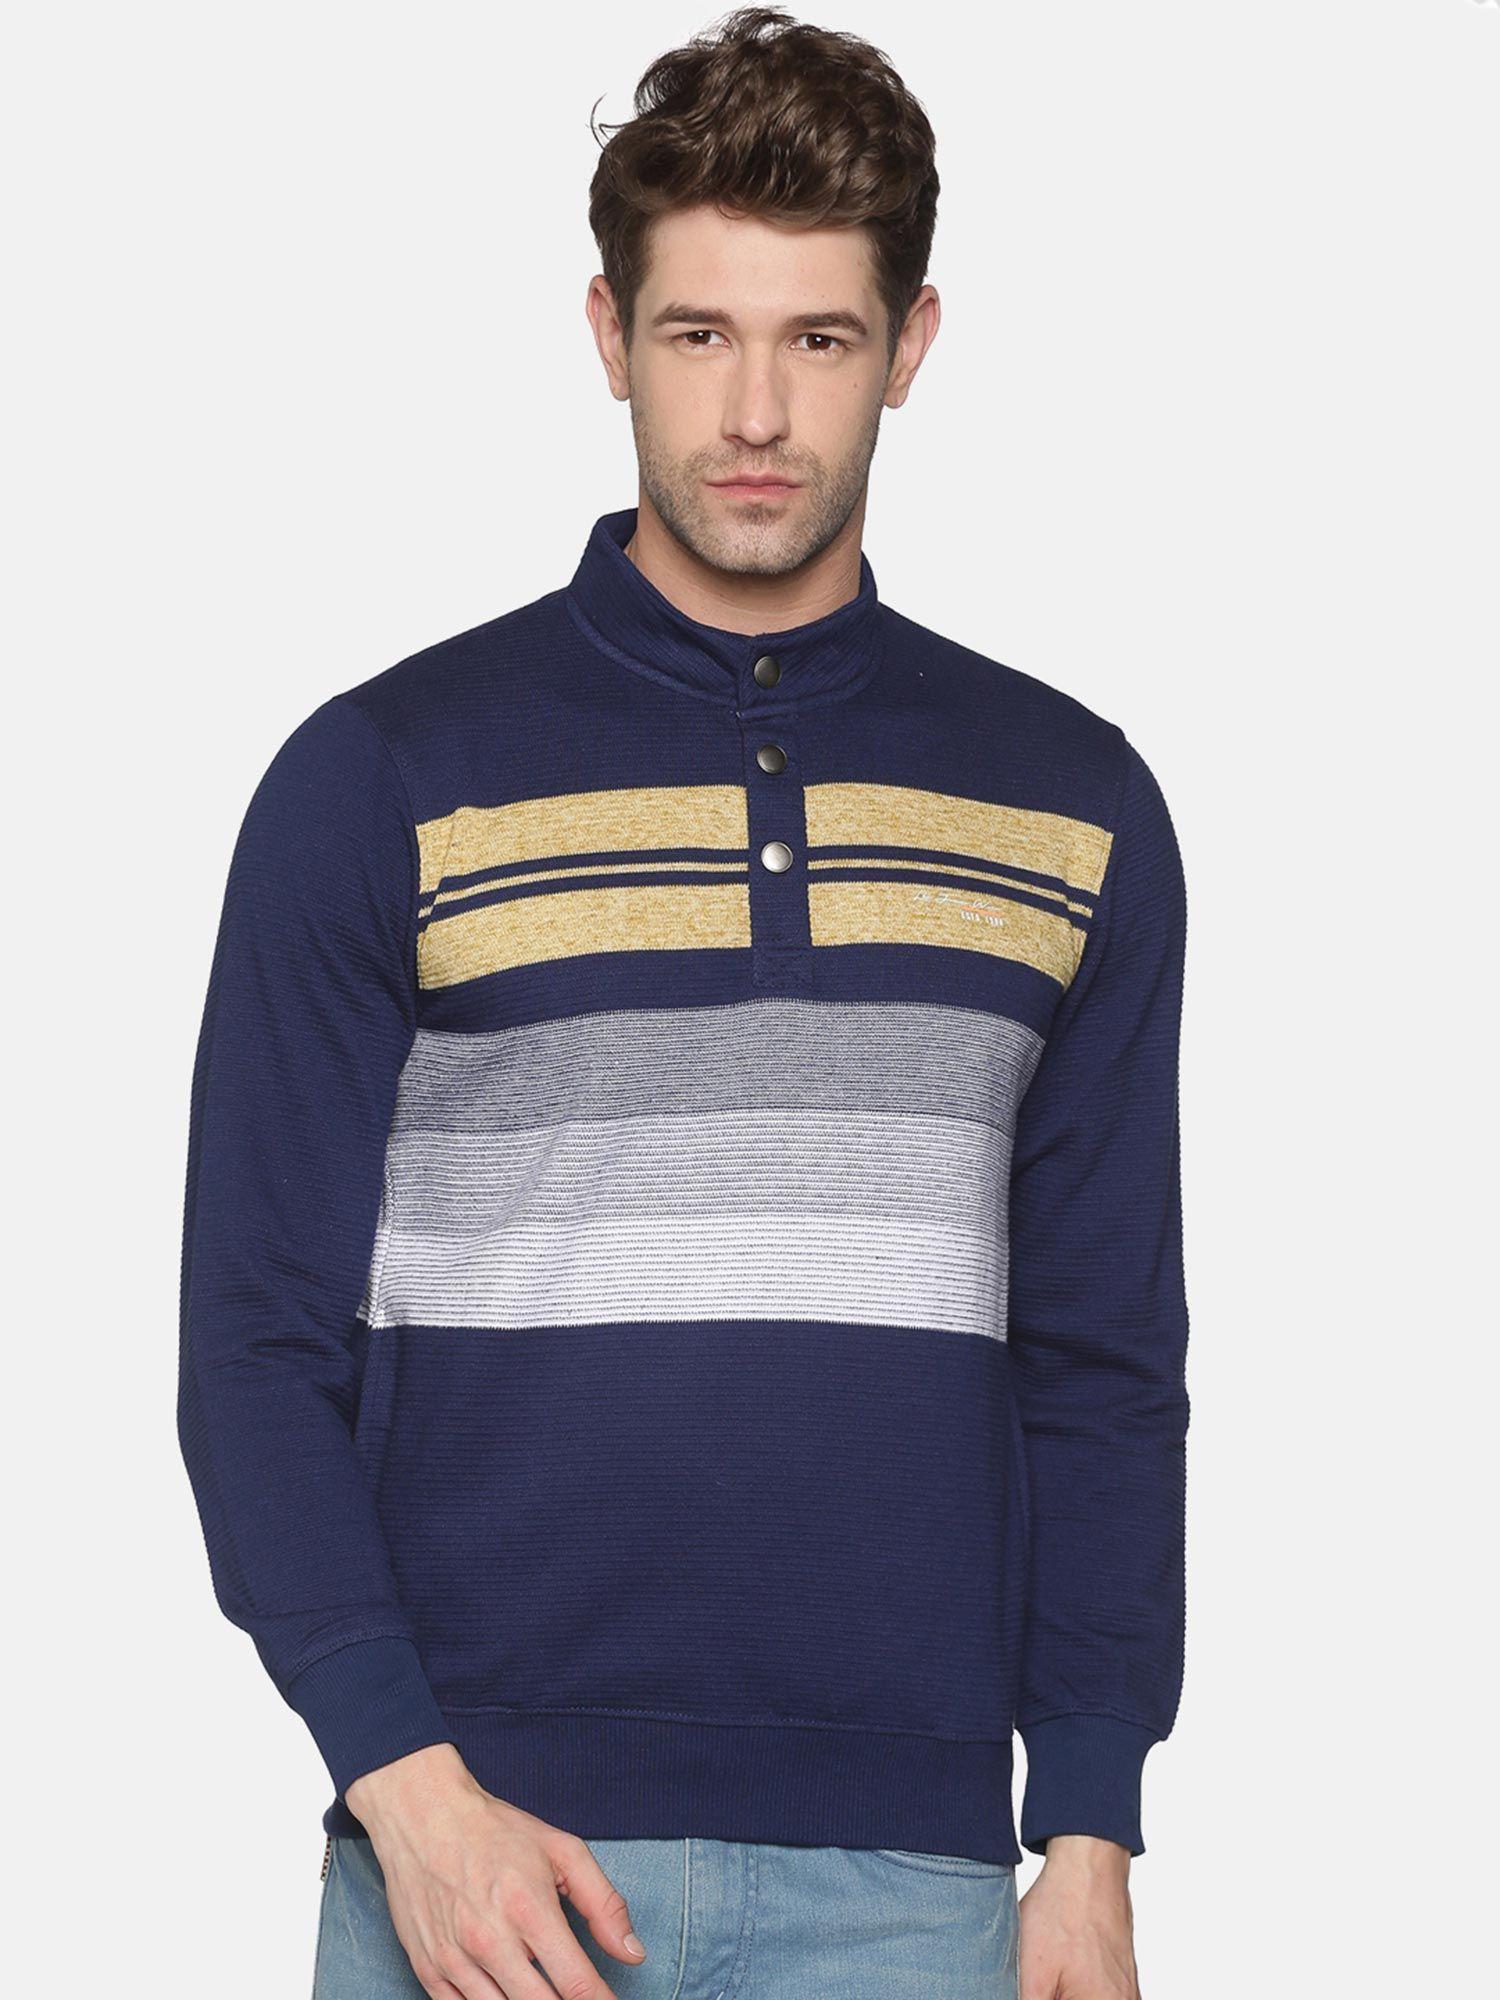 men's-cotton-casual-navy-sweatshirt